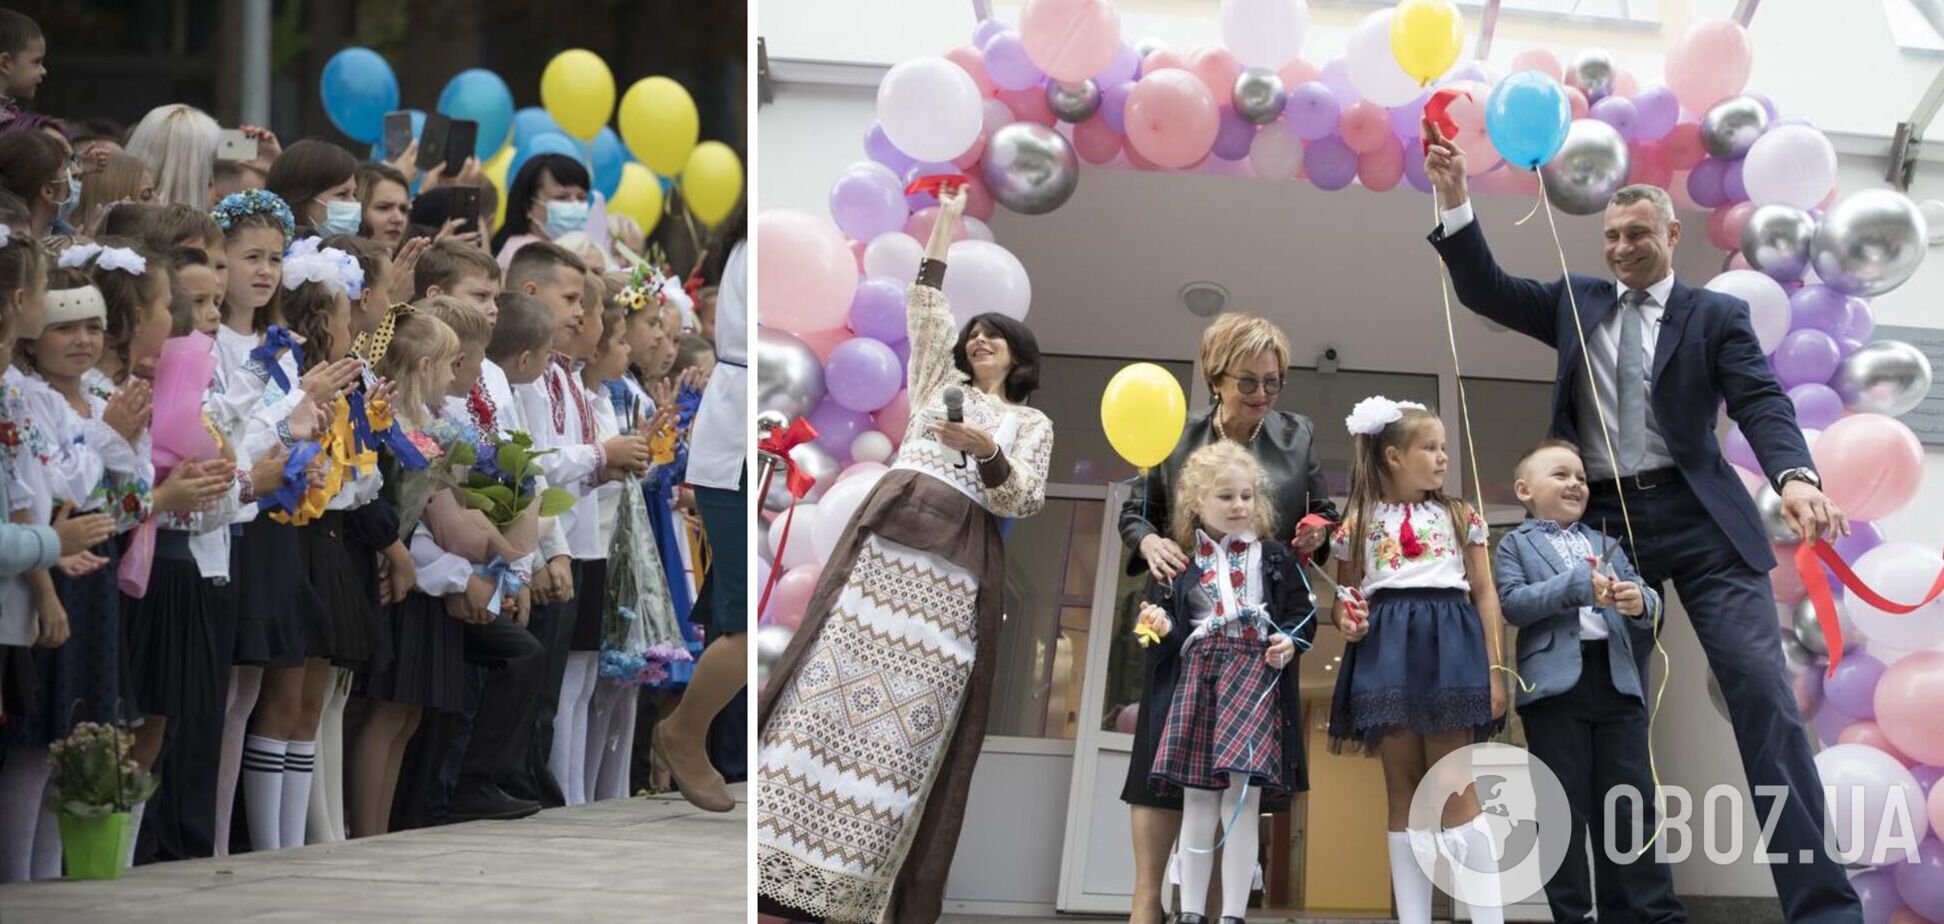 Кличко в День знаний открыл современную европейскую школу в Киеве. Фото